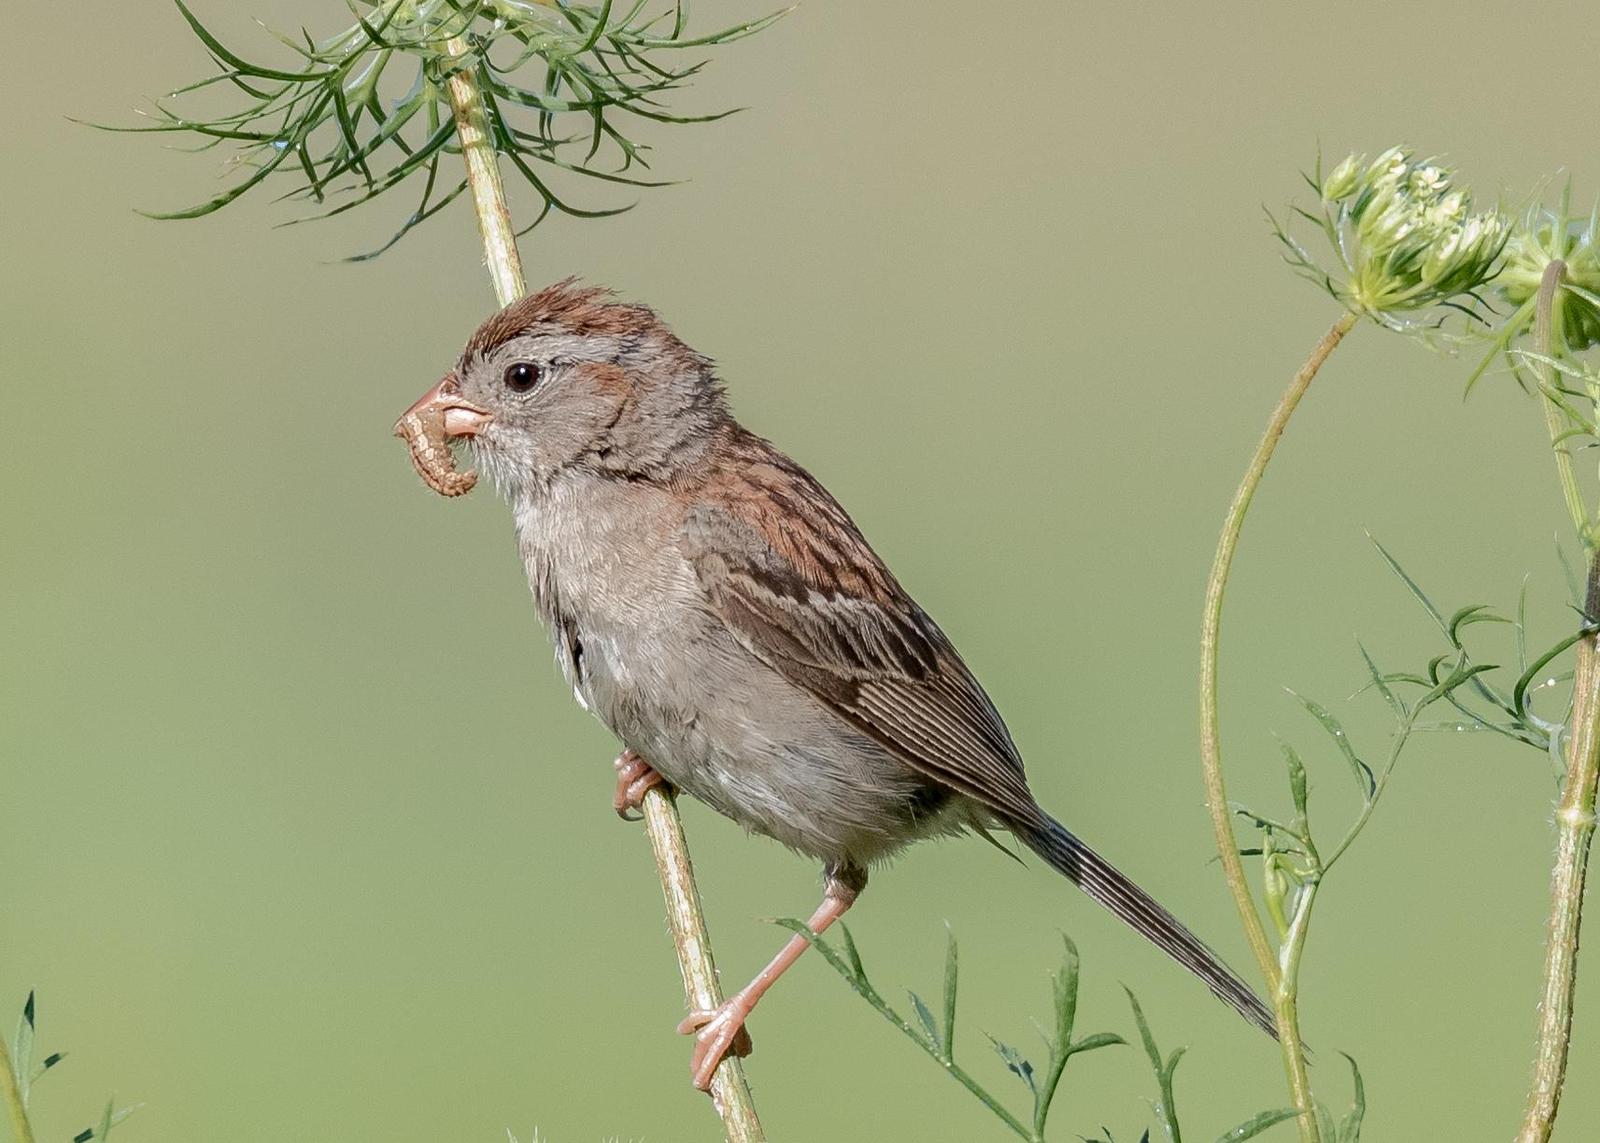 Field Sparrow Photo by Keshava Mysore